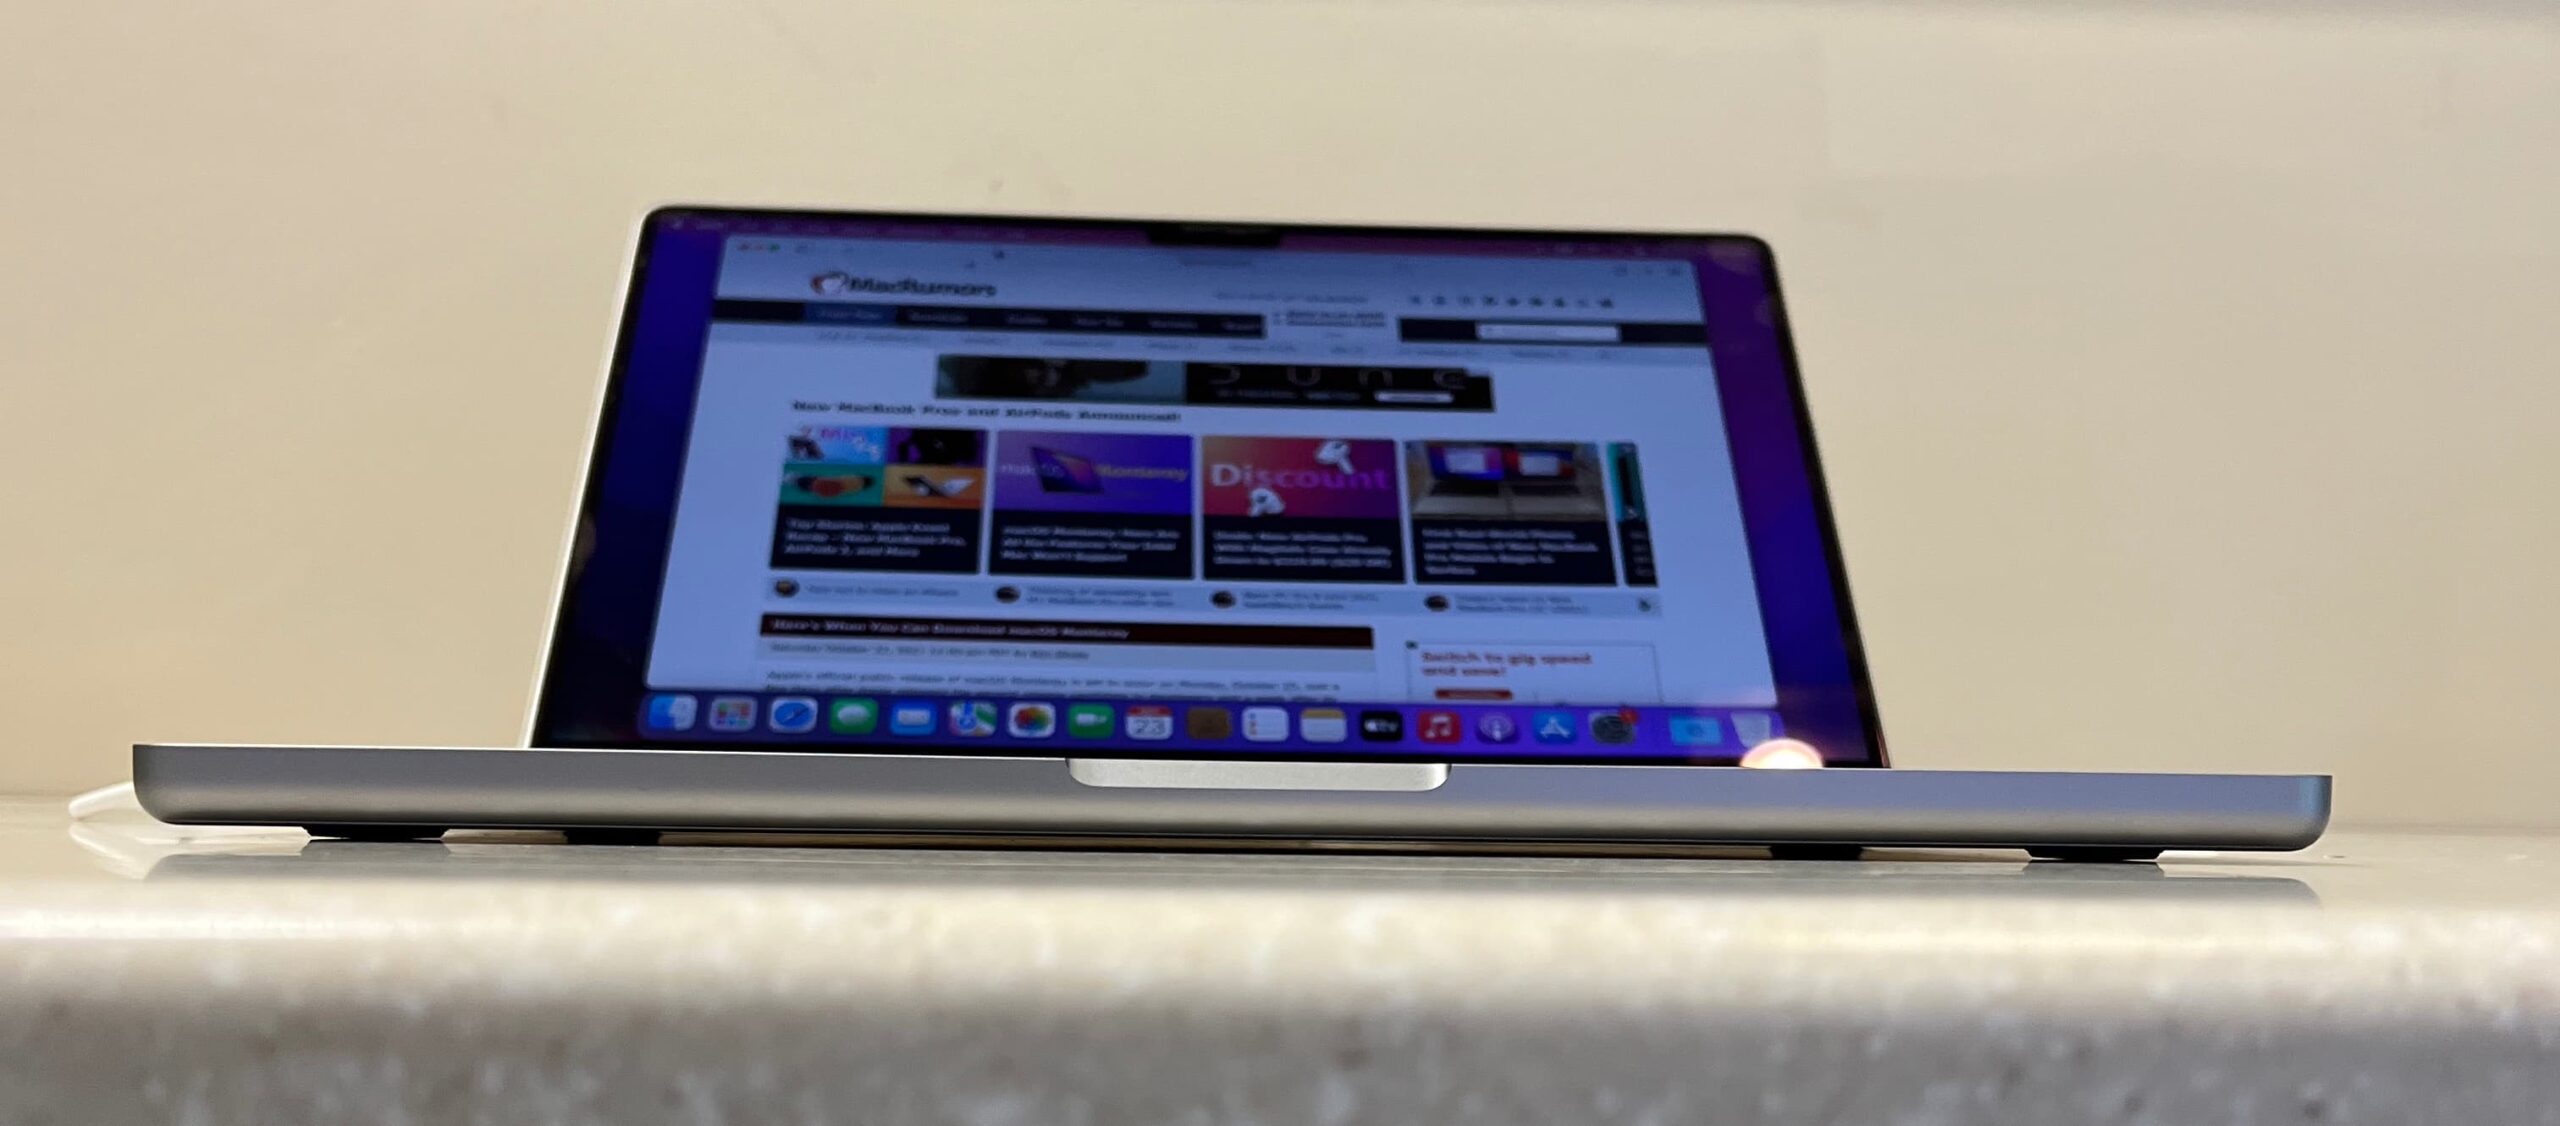 蘋果 2021 款 MacBook Pro 開箱影片和外觀實機近距離搶先看2